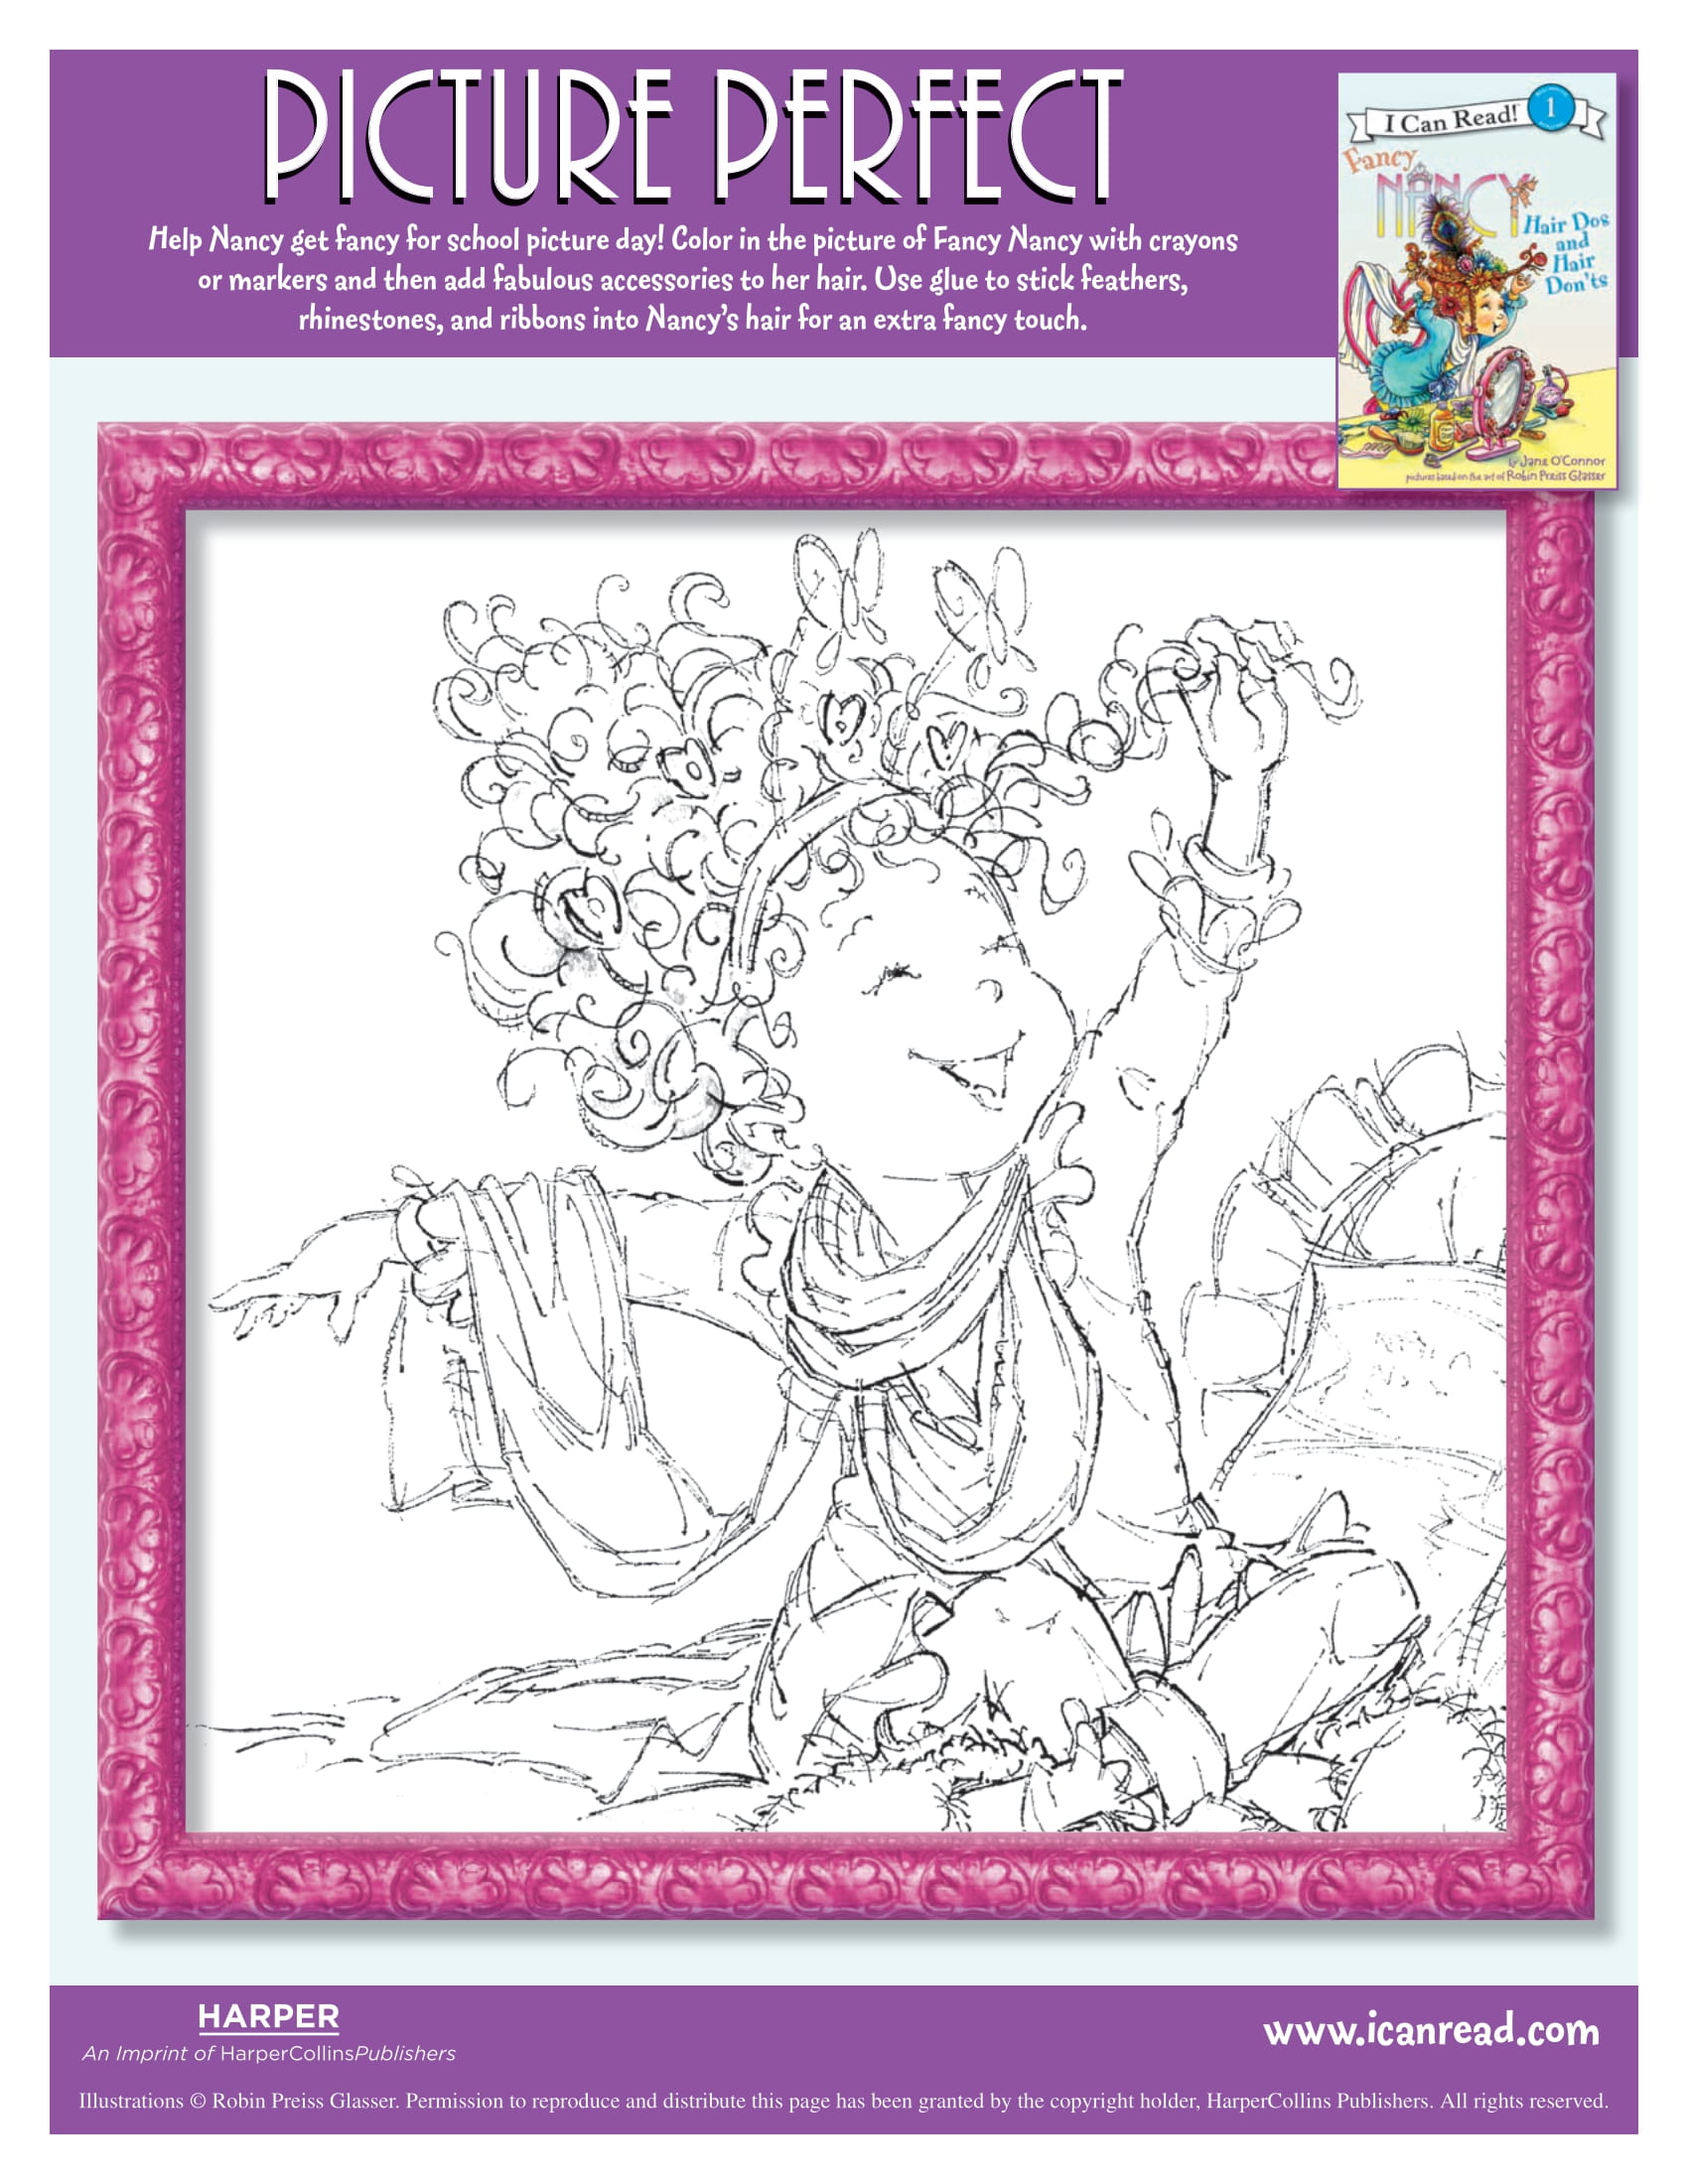 Disney Junior Fancy Nancy Jumbo Coloring Book & Activity Bookjewel